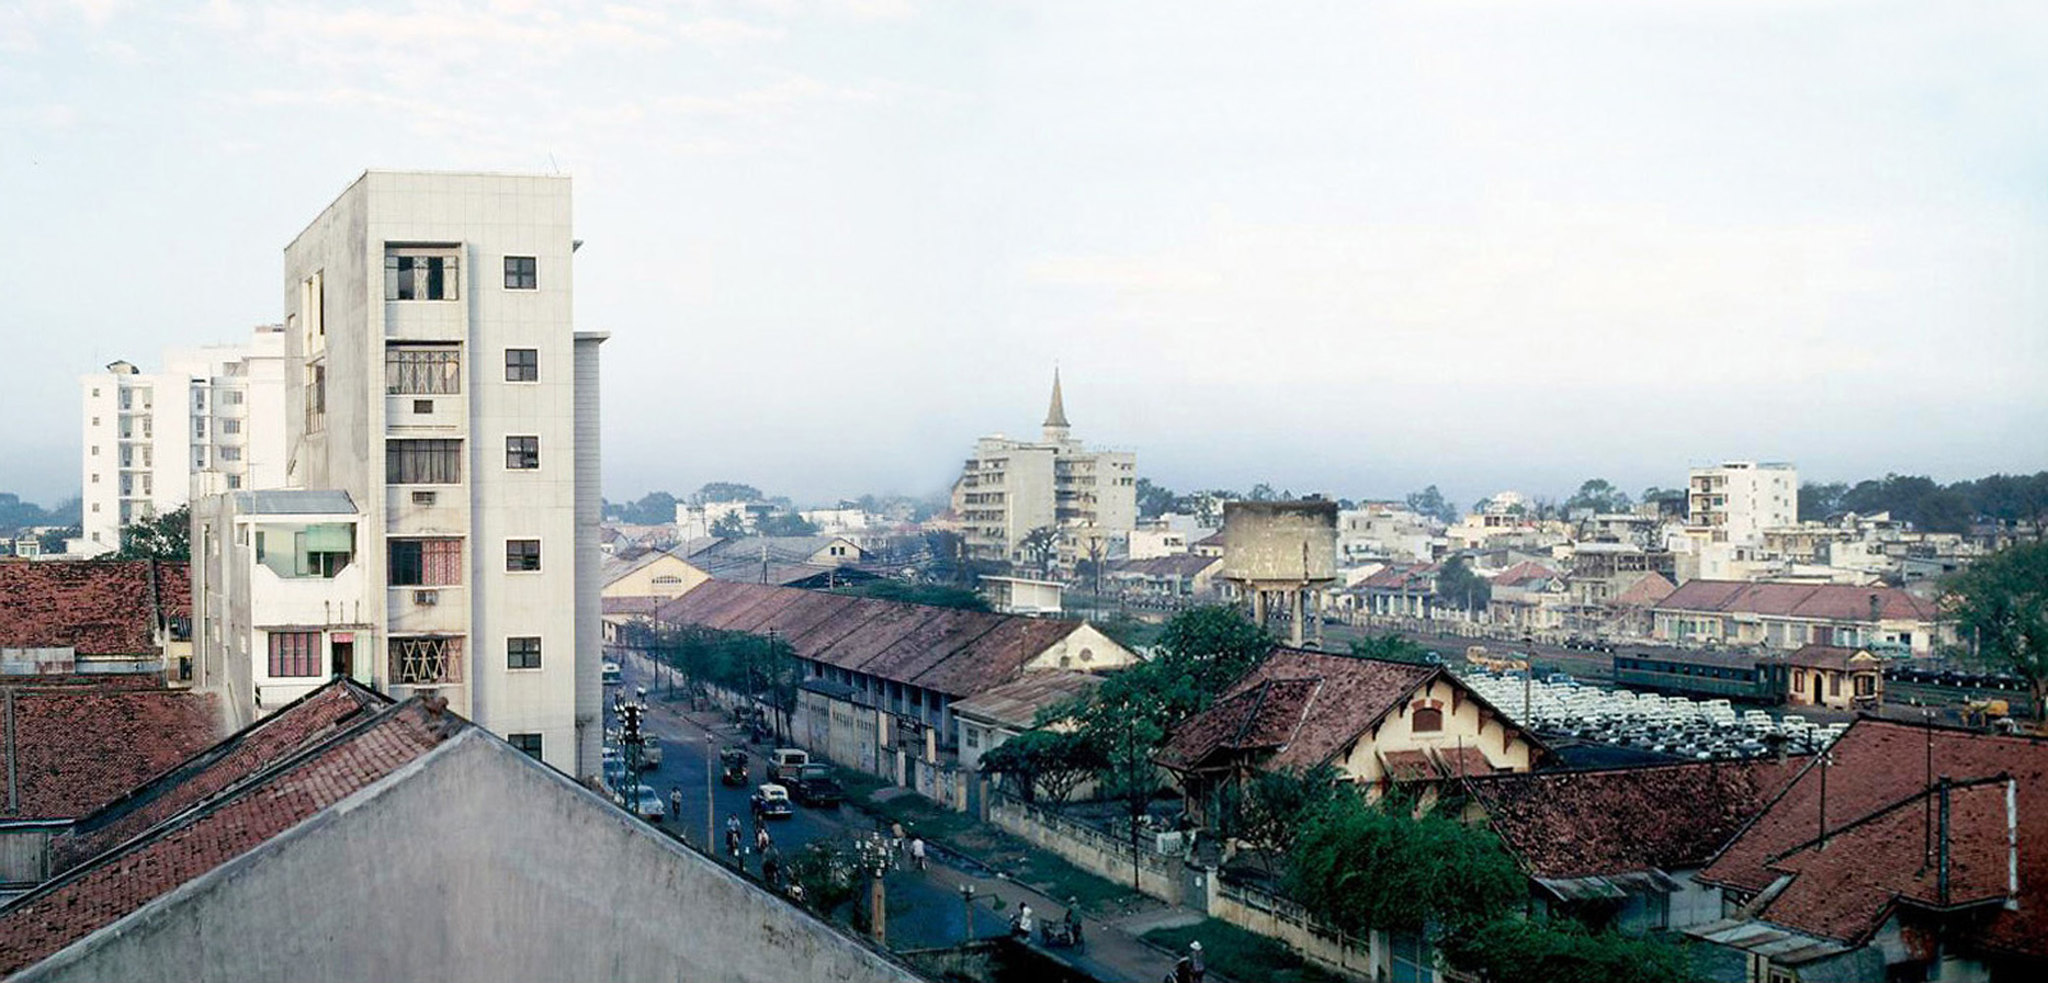 60 tấm ảnh màu đẹp nhất của đường phố Saigon thập niên 1960-1970 - 42